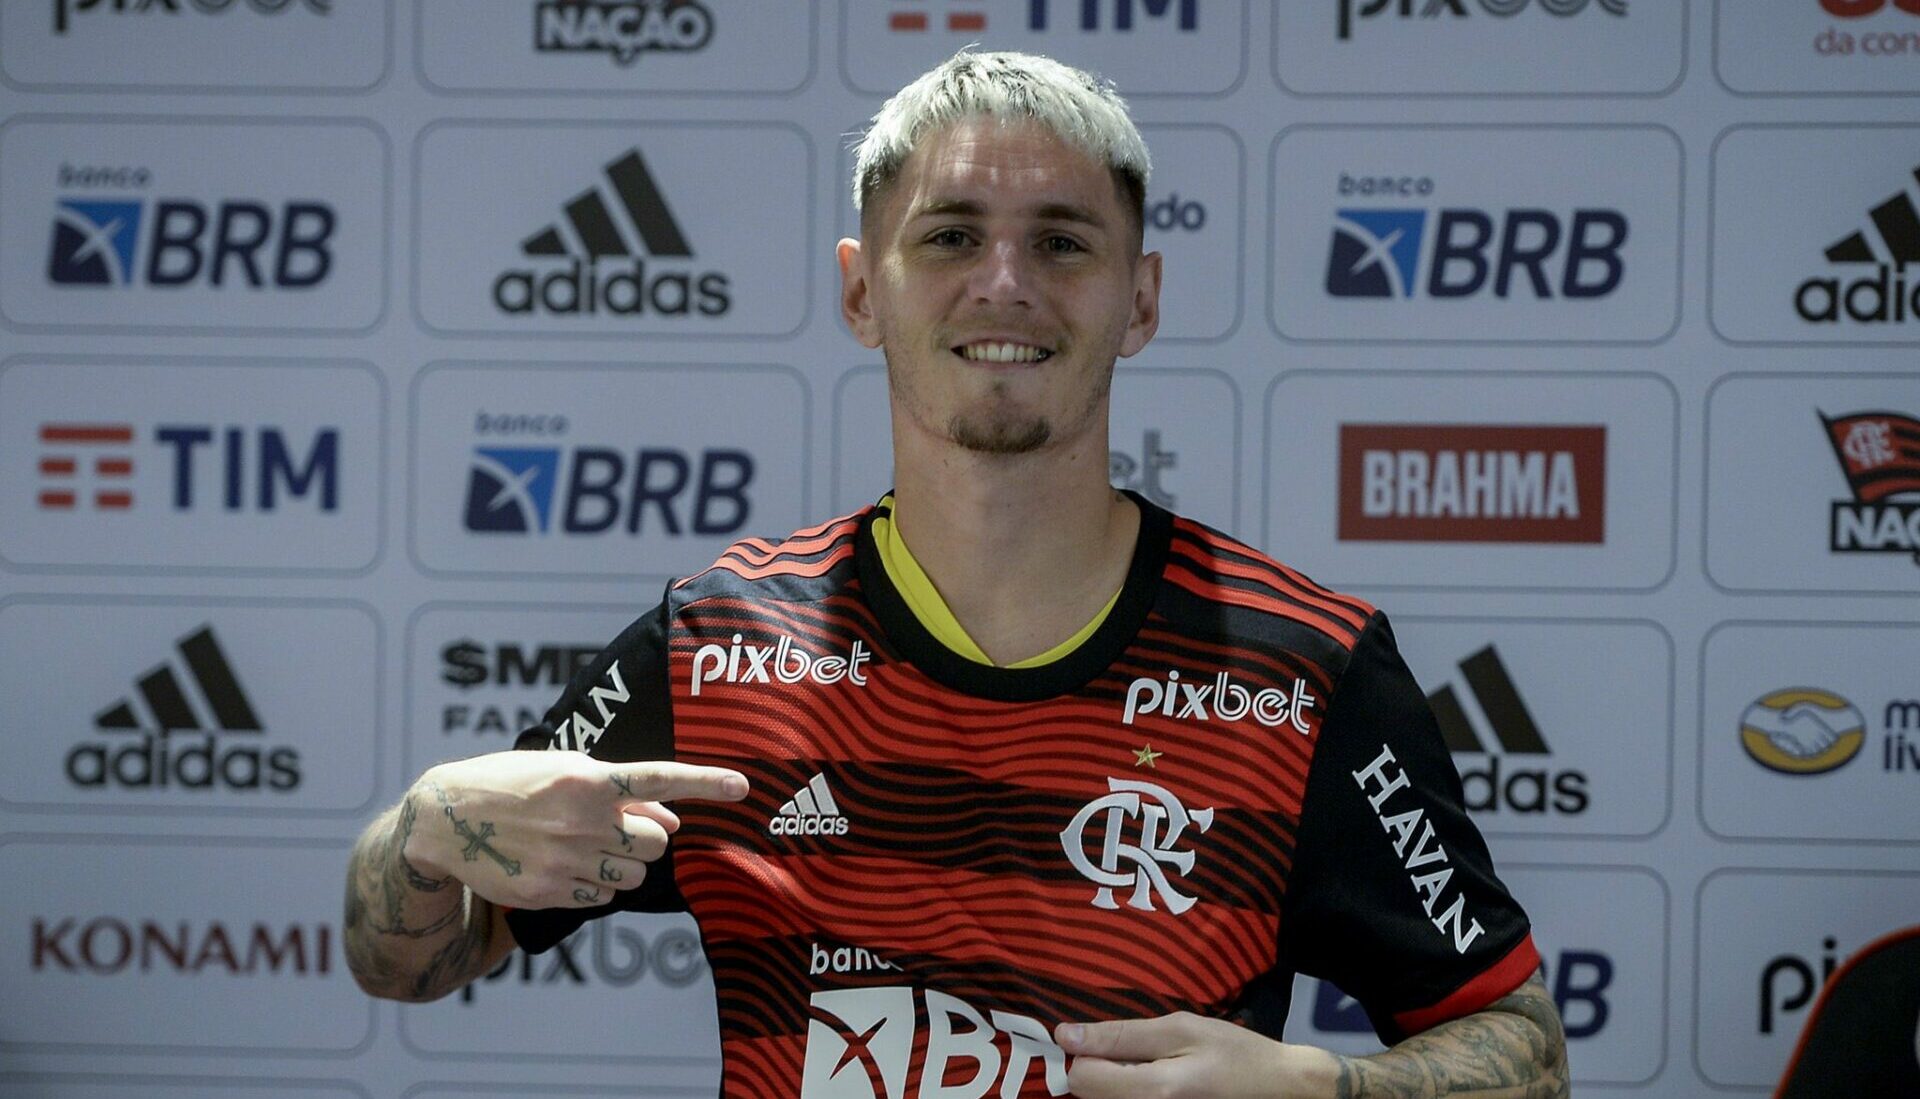 Onde vai passar o jogo do Flamengo hoje: como assistir ao vivo - NossoFla